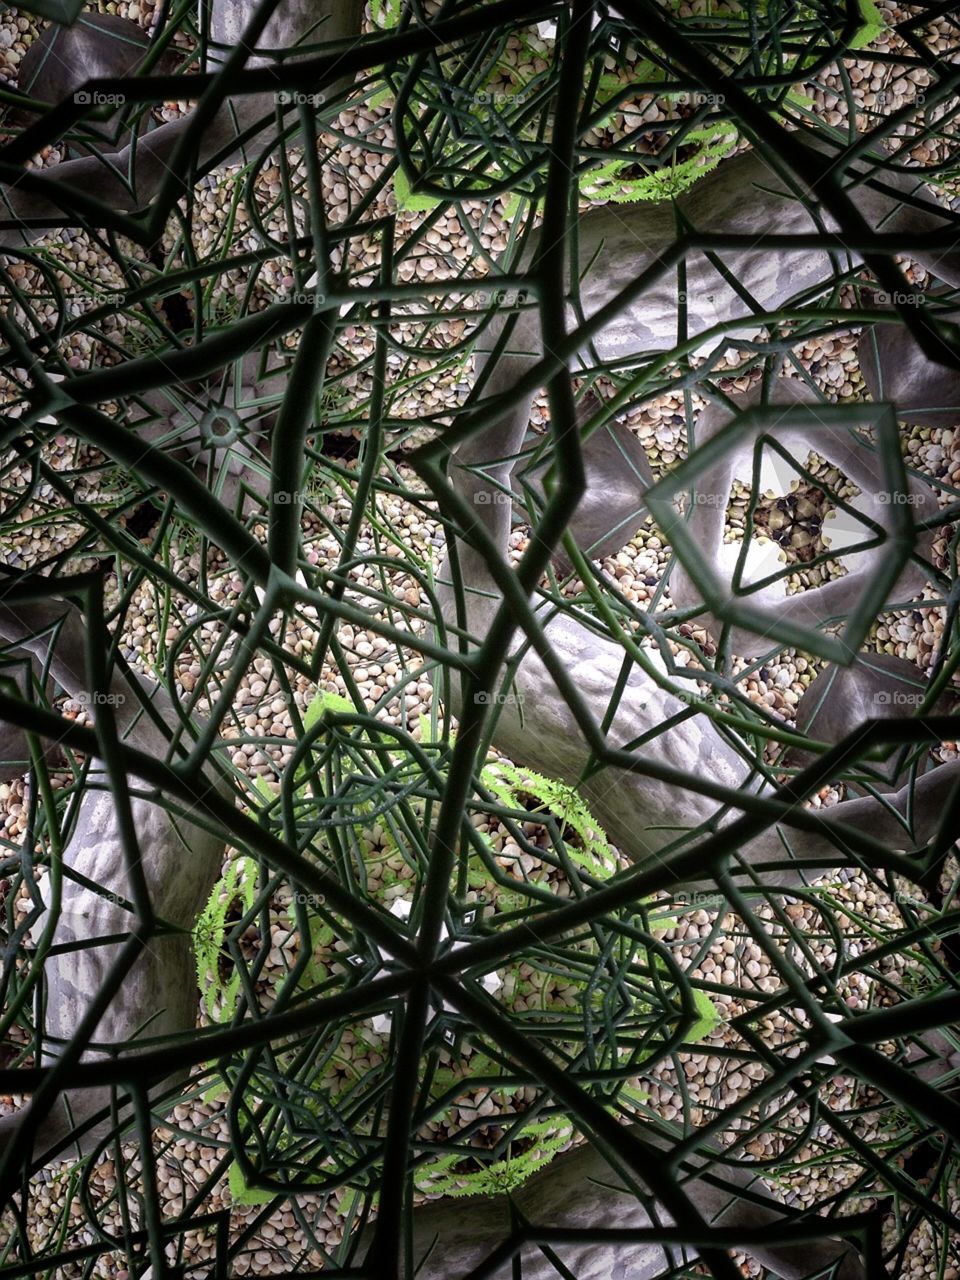 Kaleidoscope 8. My garden 